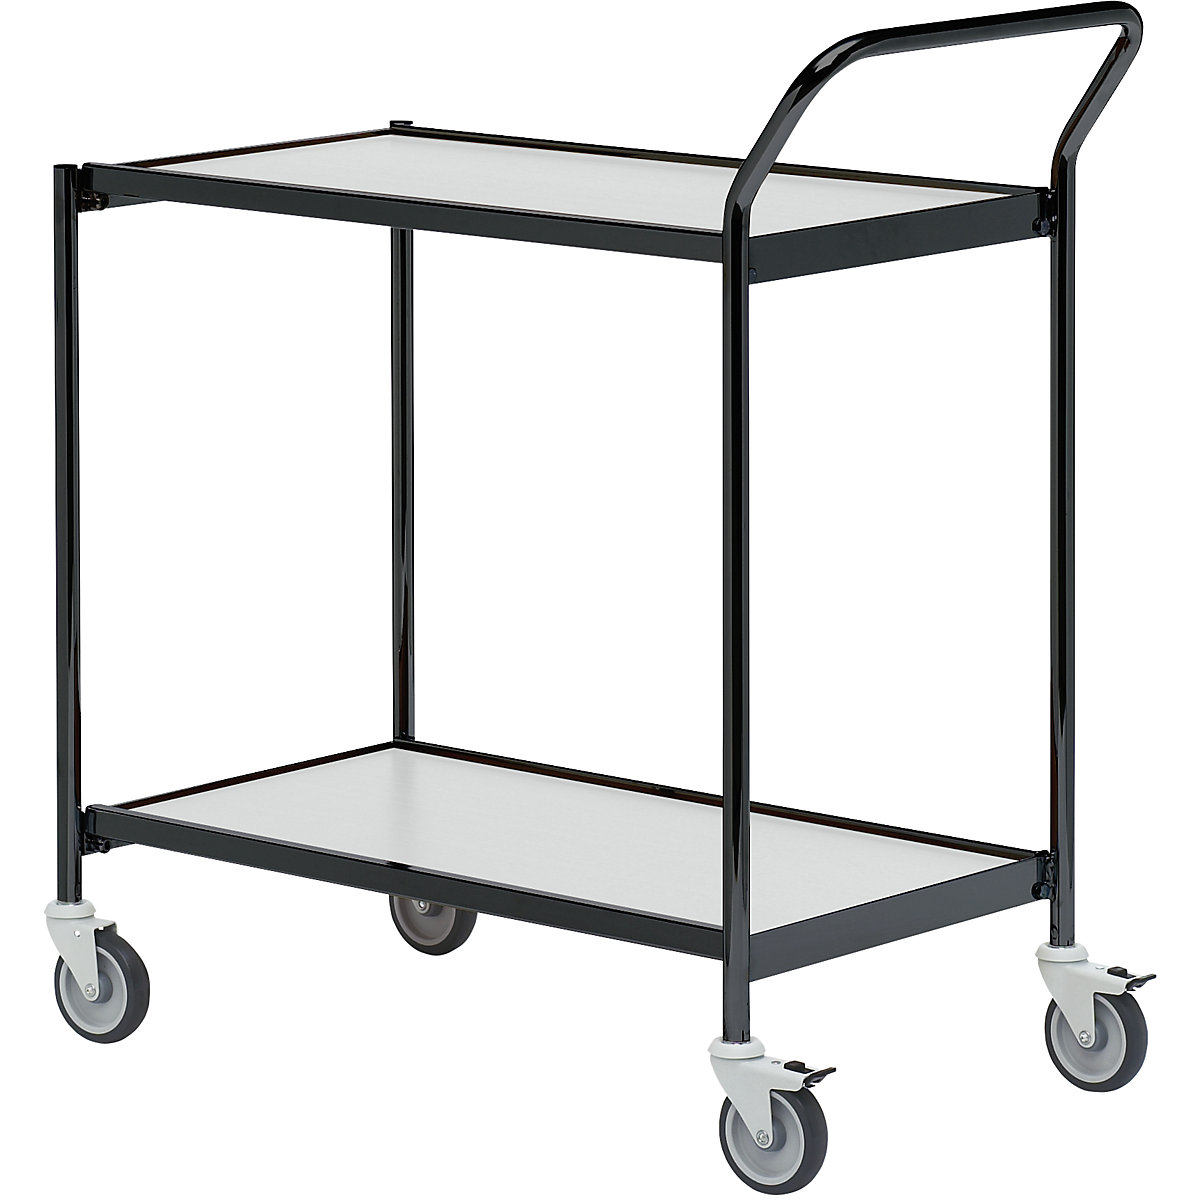 Stolový vozík – HelgeNyberg, 2 poschodia, d x š 800 x 420 mm, čierna/šedá, od 5 ks-40